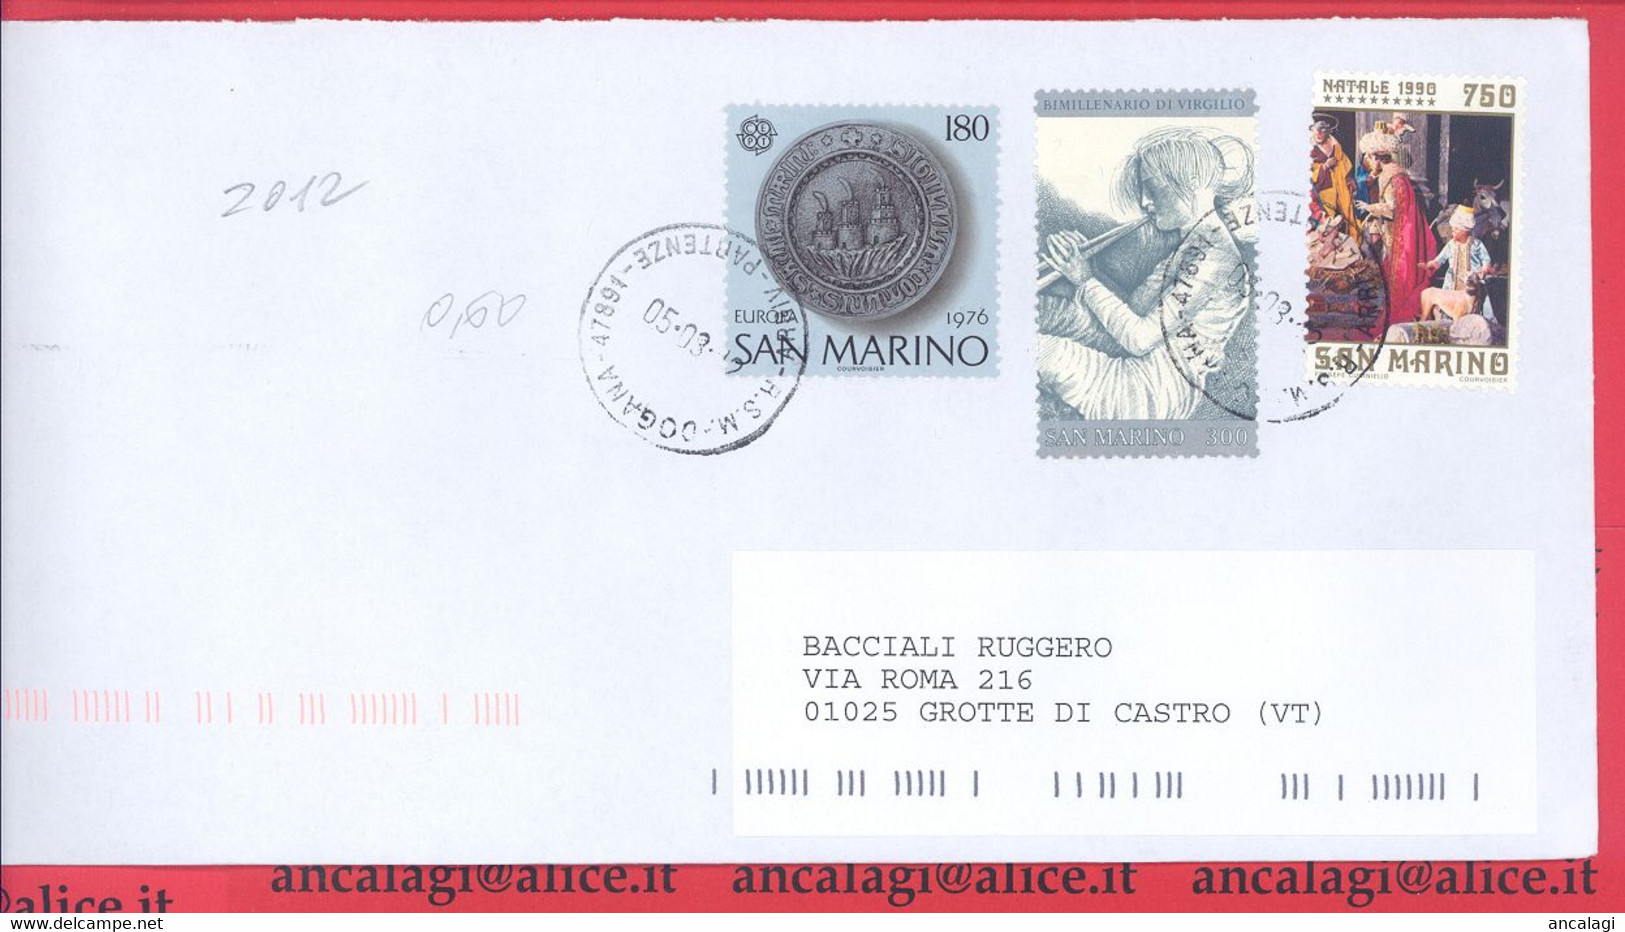 SAN MARINO 2012 - St.Post.087 - Busta Ordinaria Affrancatura Con 3v. In Lire 1230  - Vedi Descrizione - - Storia Postale